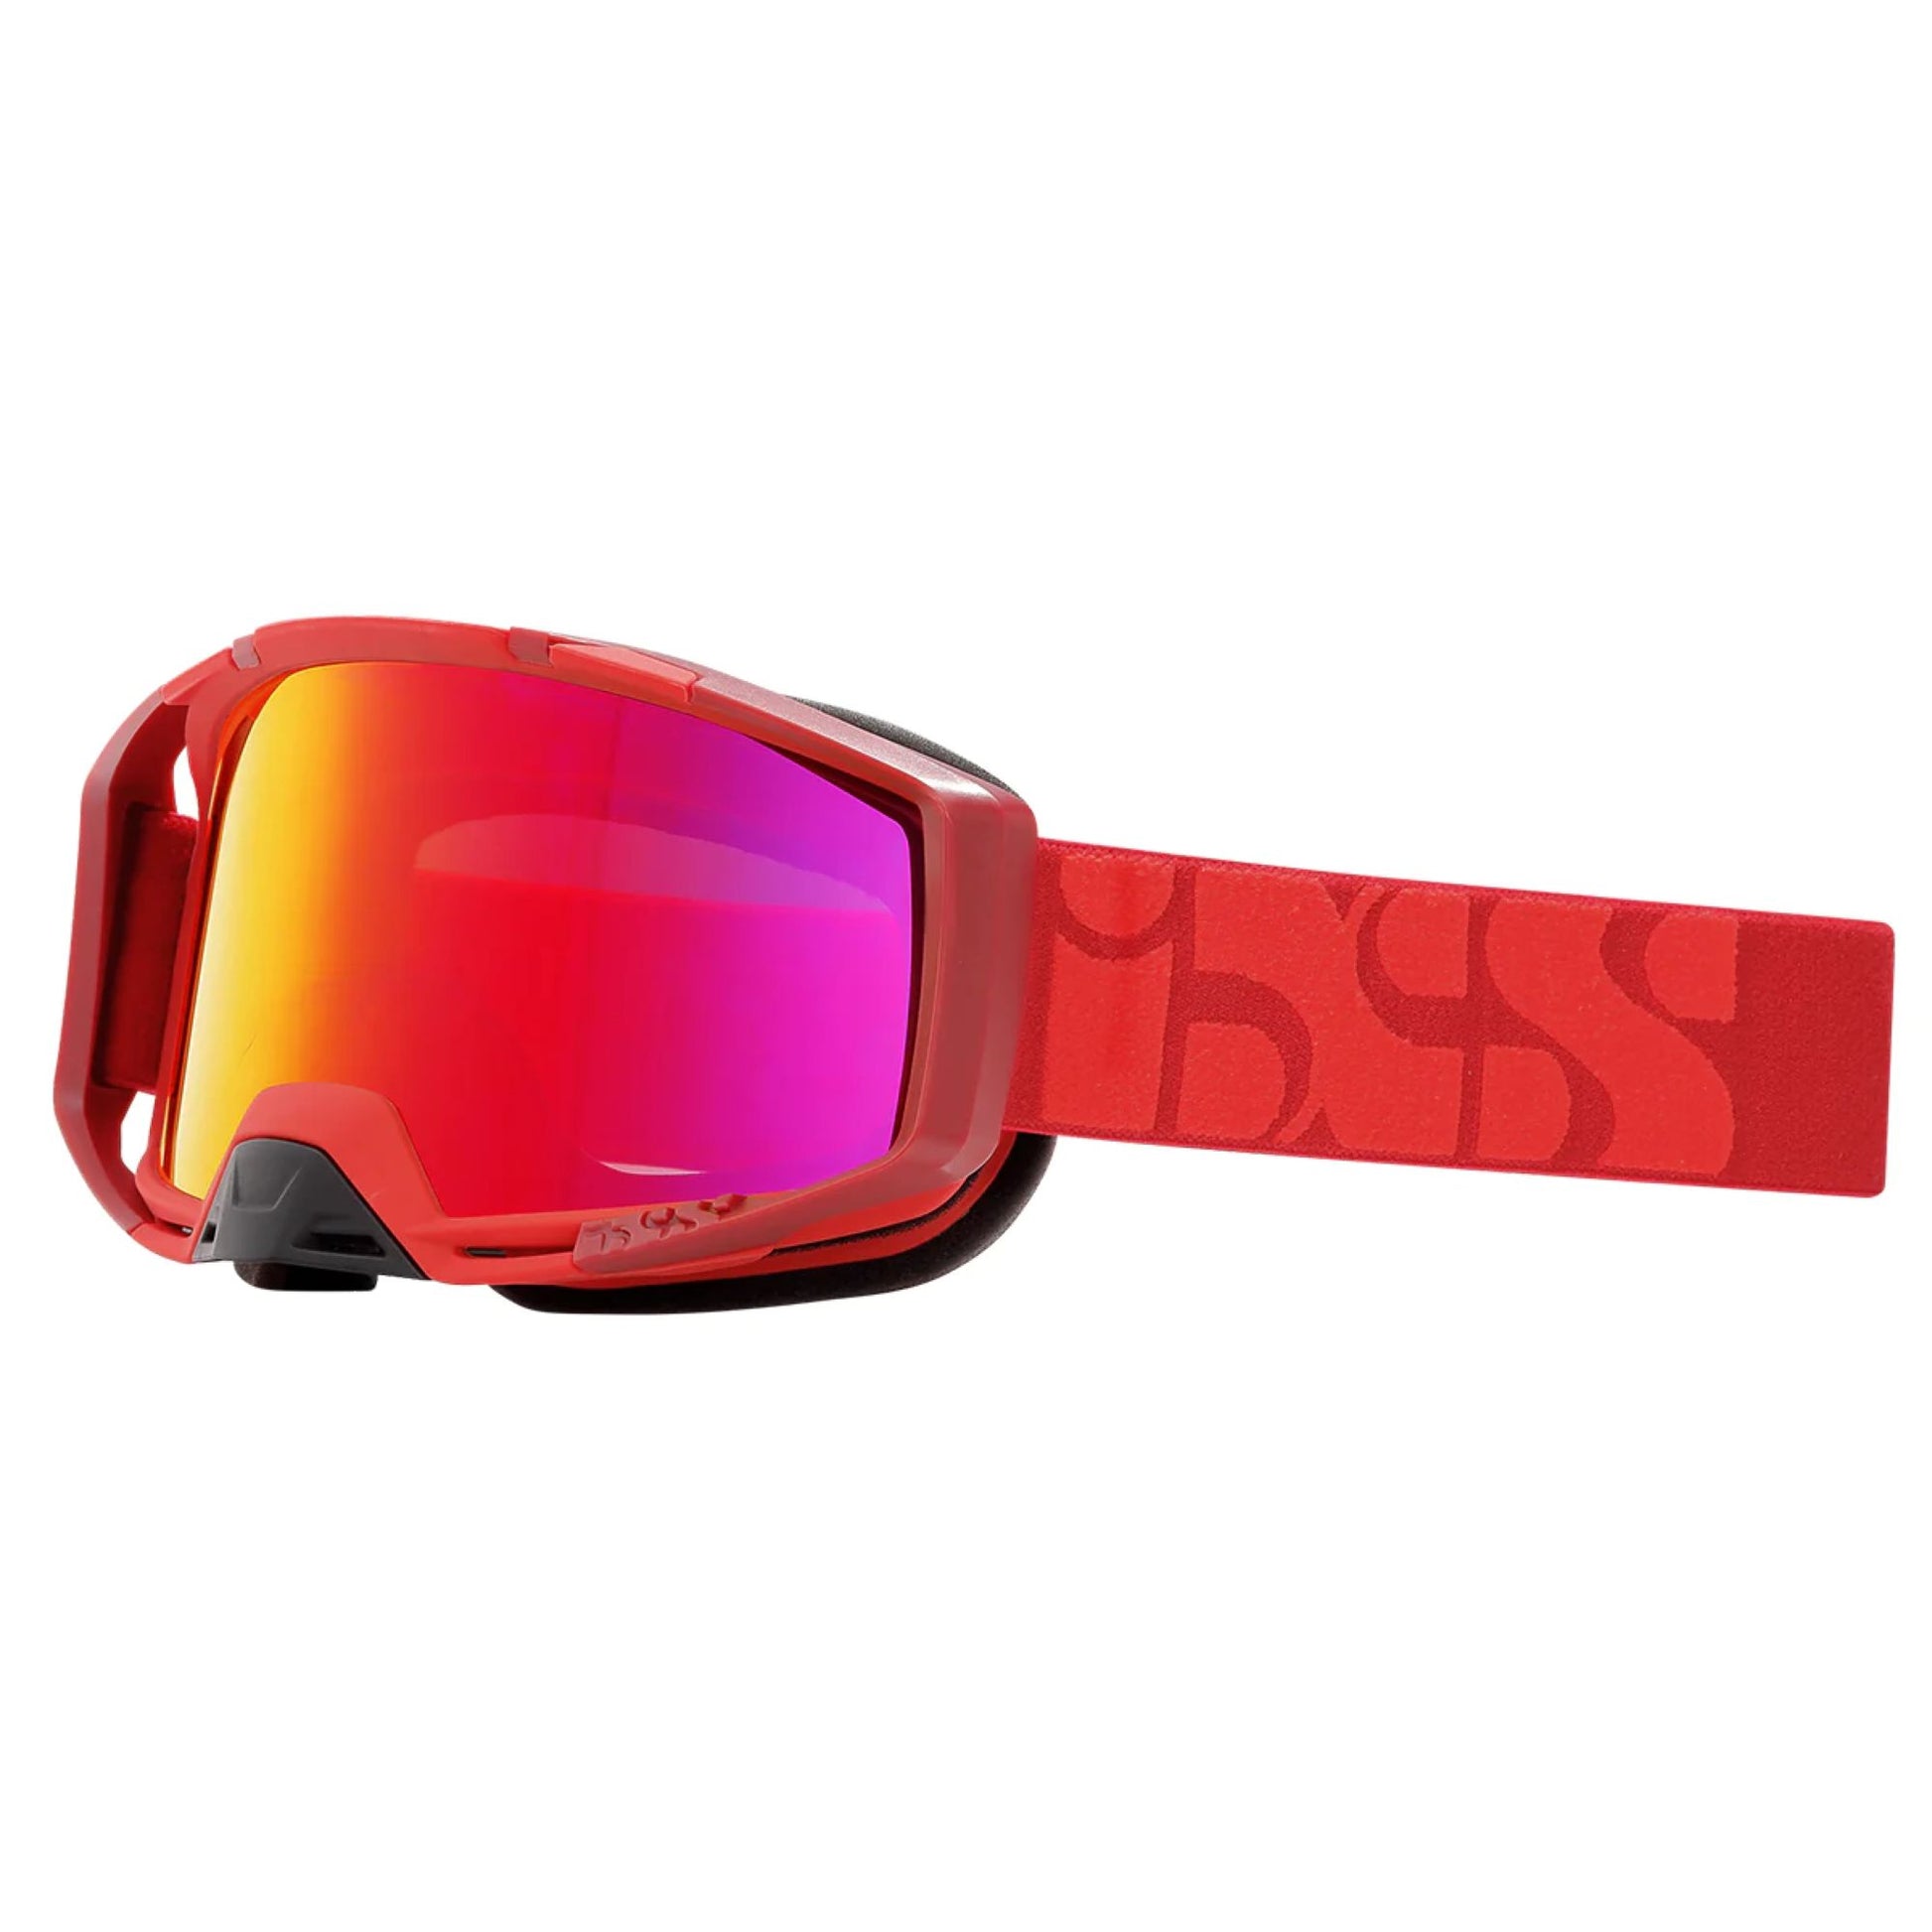 iXS Trigger Goggle Red/Mirror Orange / Mirror Bike Goggles